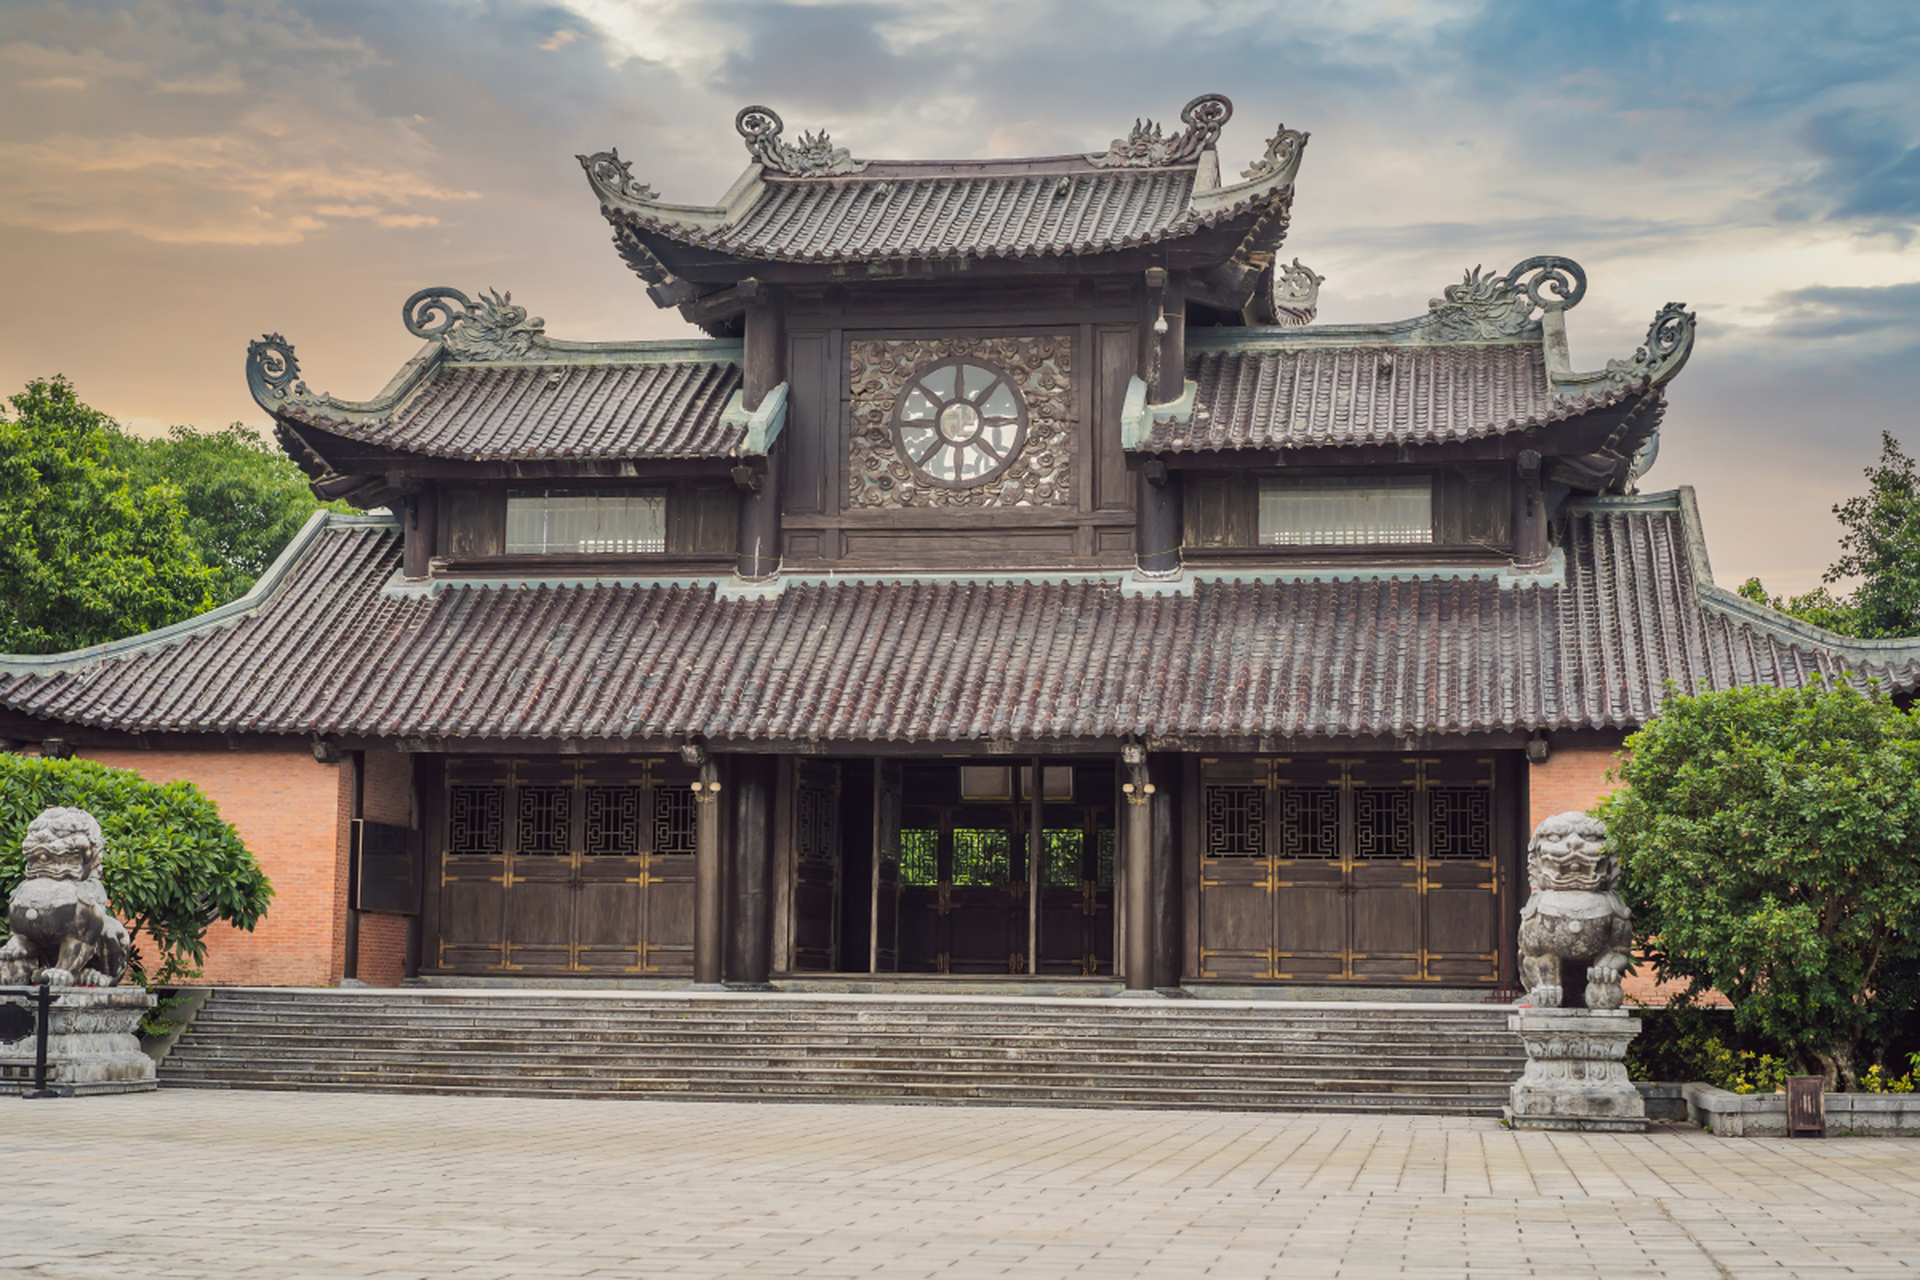 道教寺庙称谓繁多,反映了道教建筑的多样性和功能性,体现了道教文化在